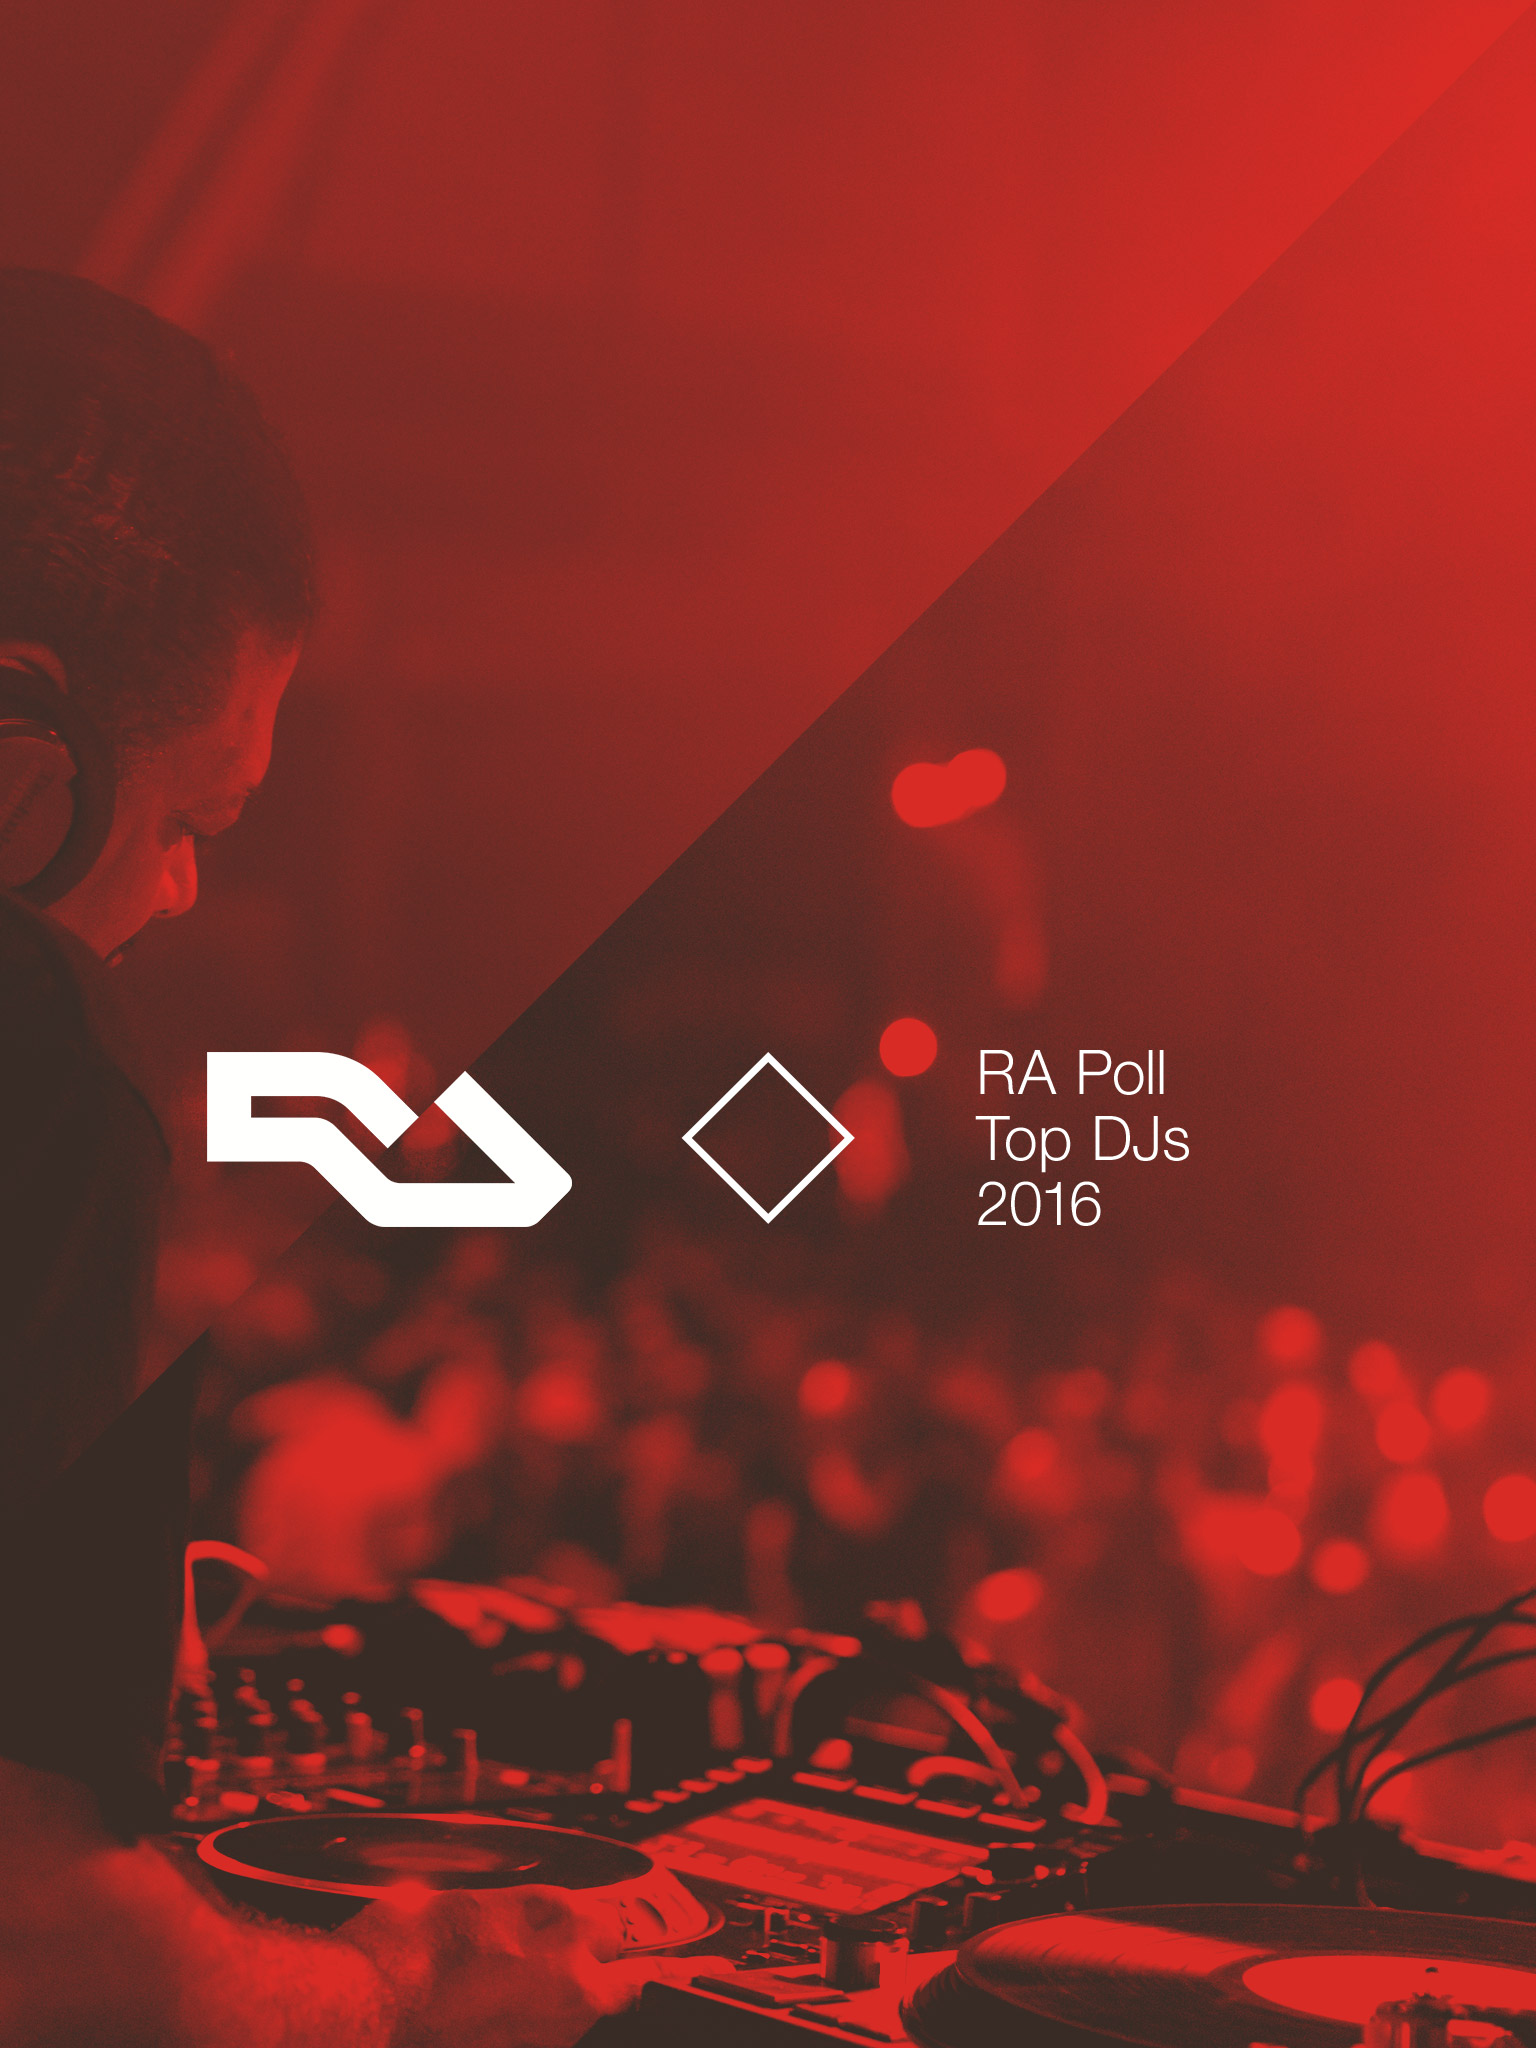 RA Poll: Top DJs of 2016